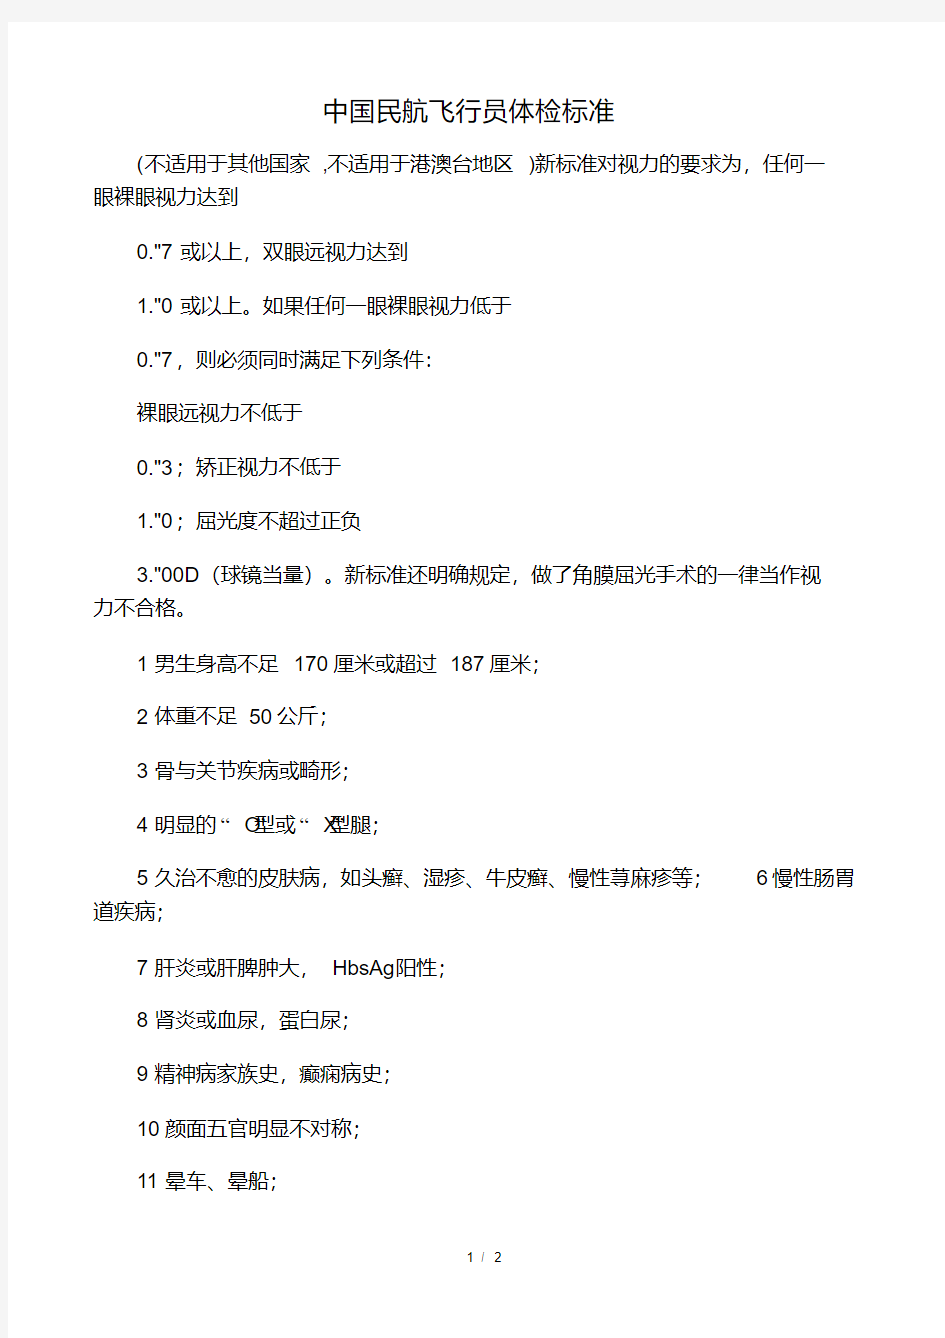 中国民航飞行员体检标准.pdf